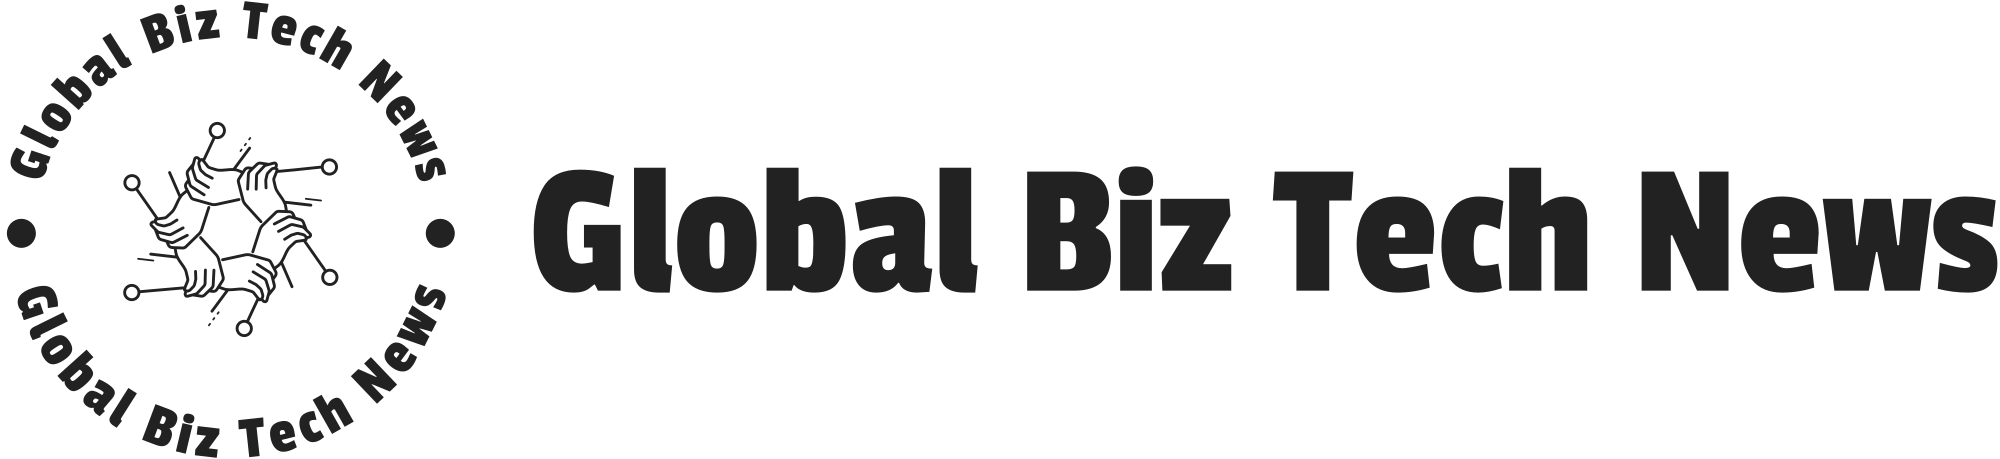 Global Biz Tech News